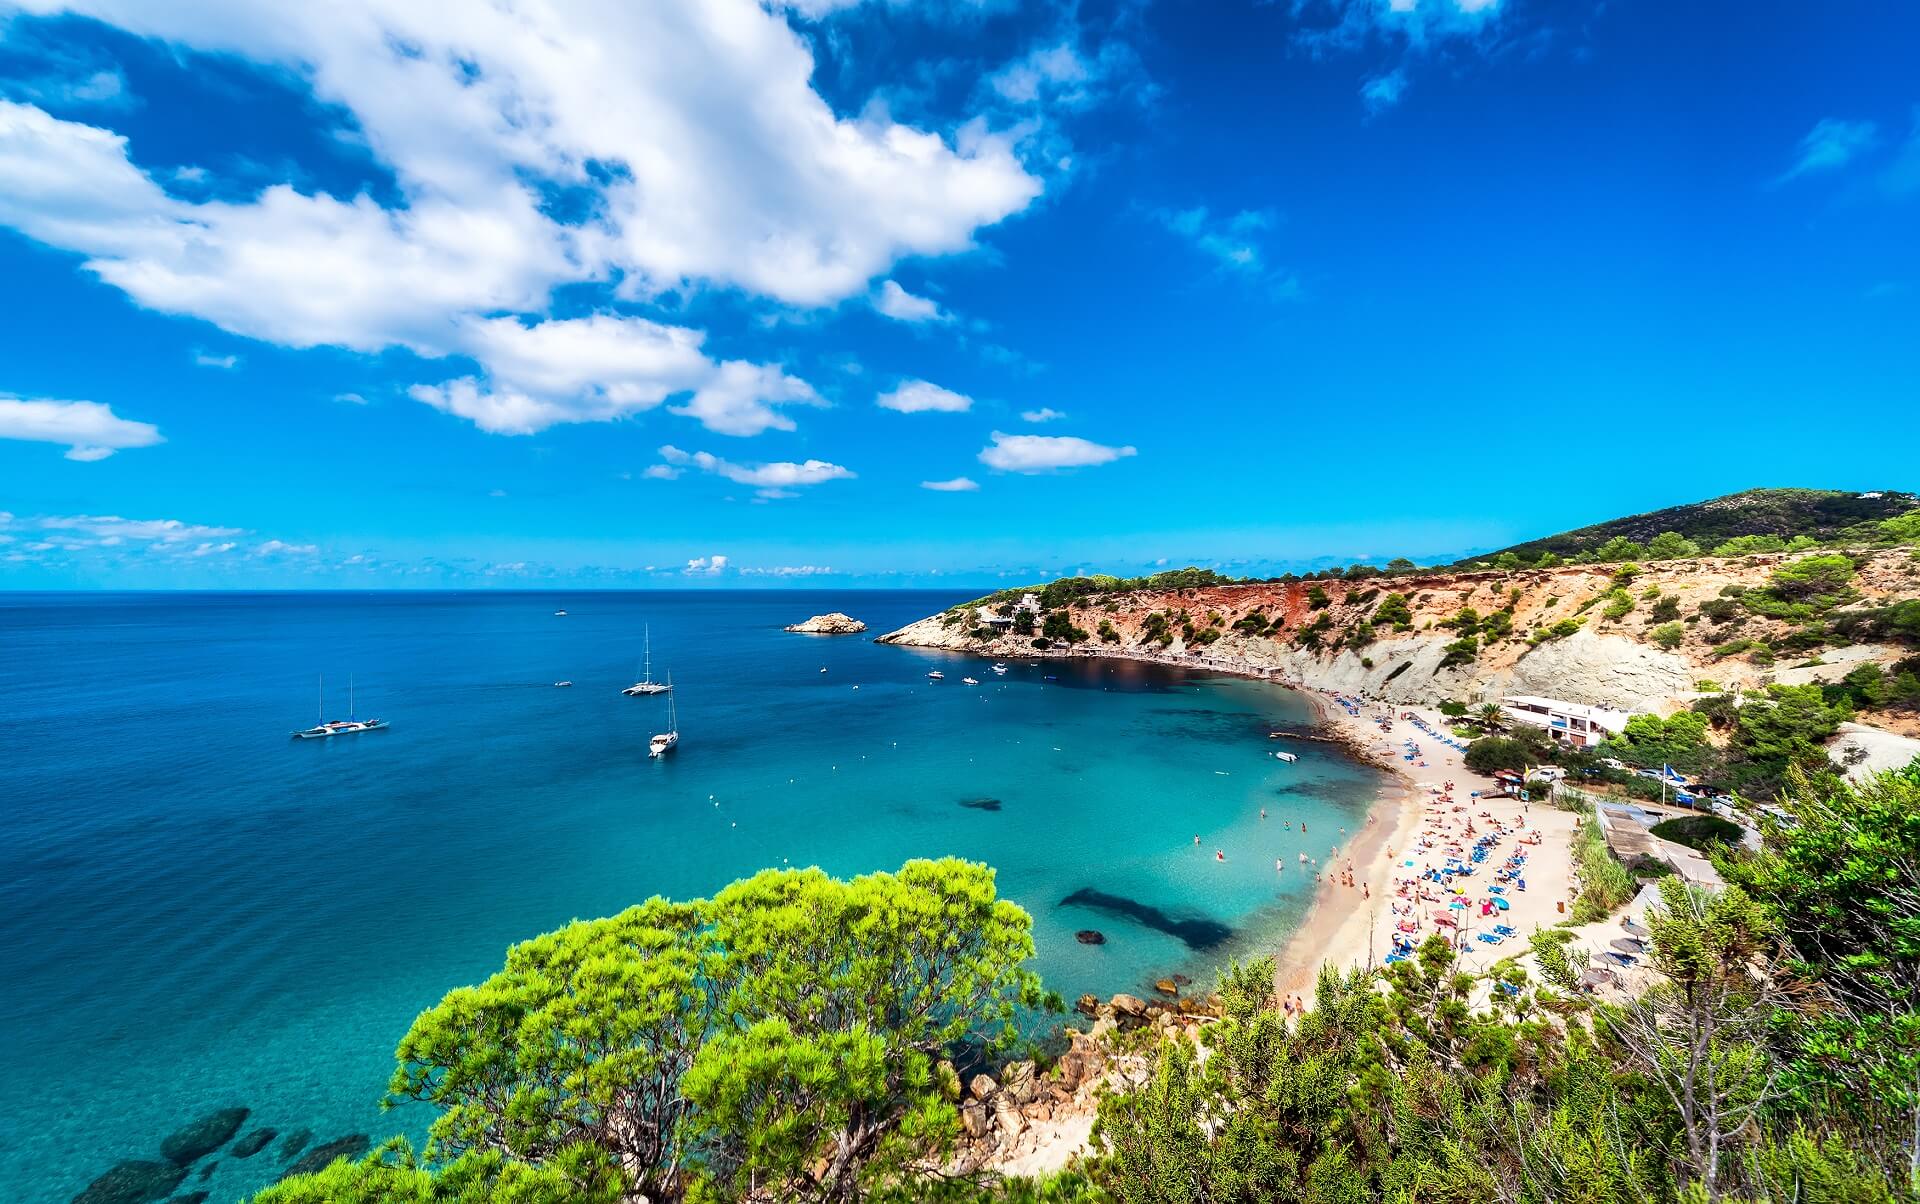 Der Strand Cala d'Hort gehört zu den schönsten Stränden Ibizas